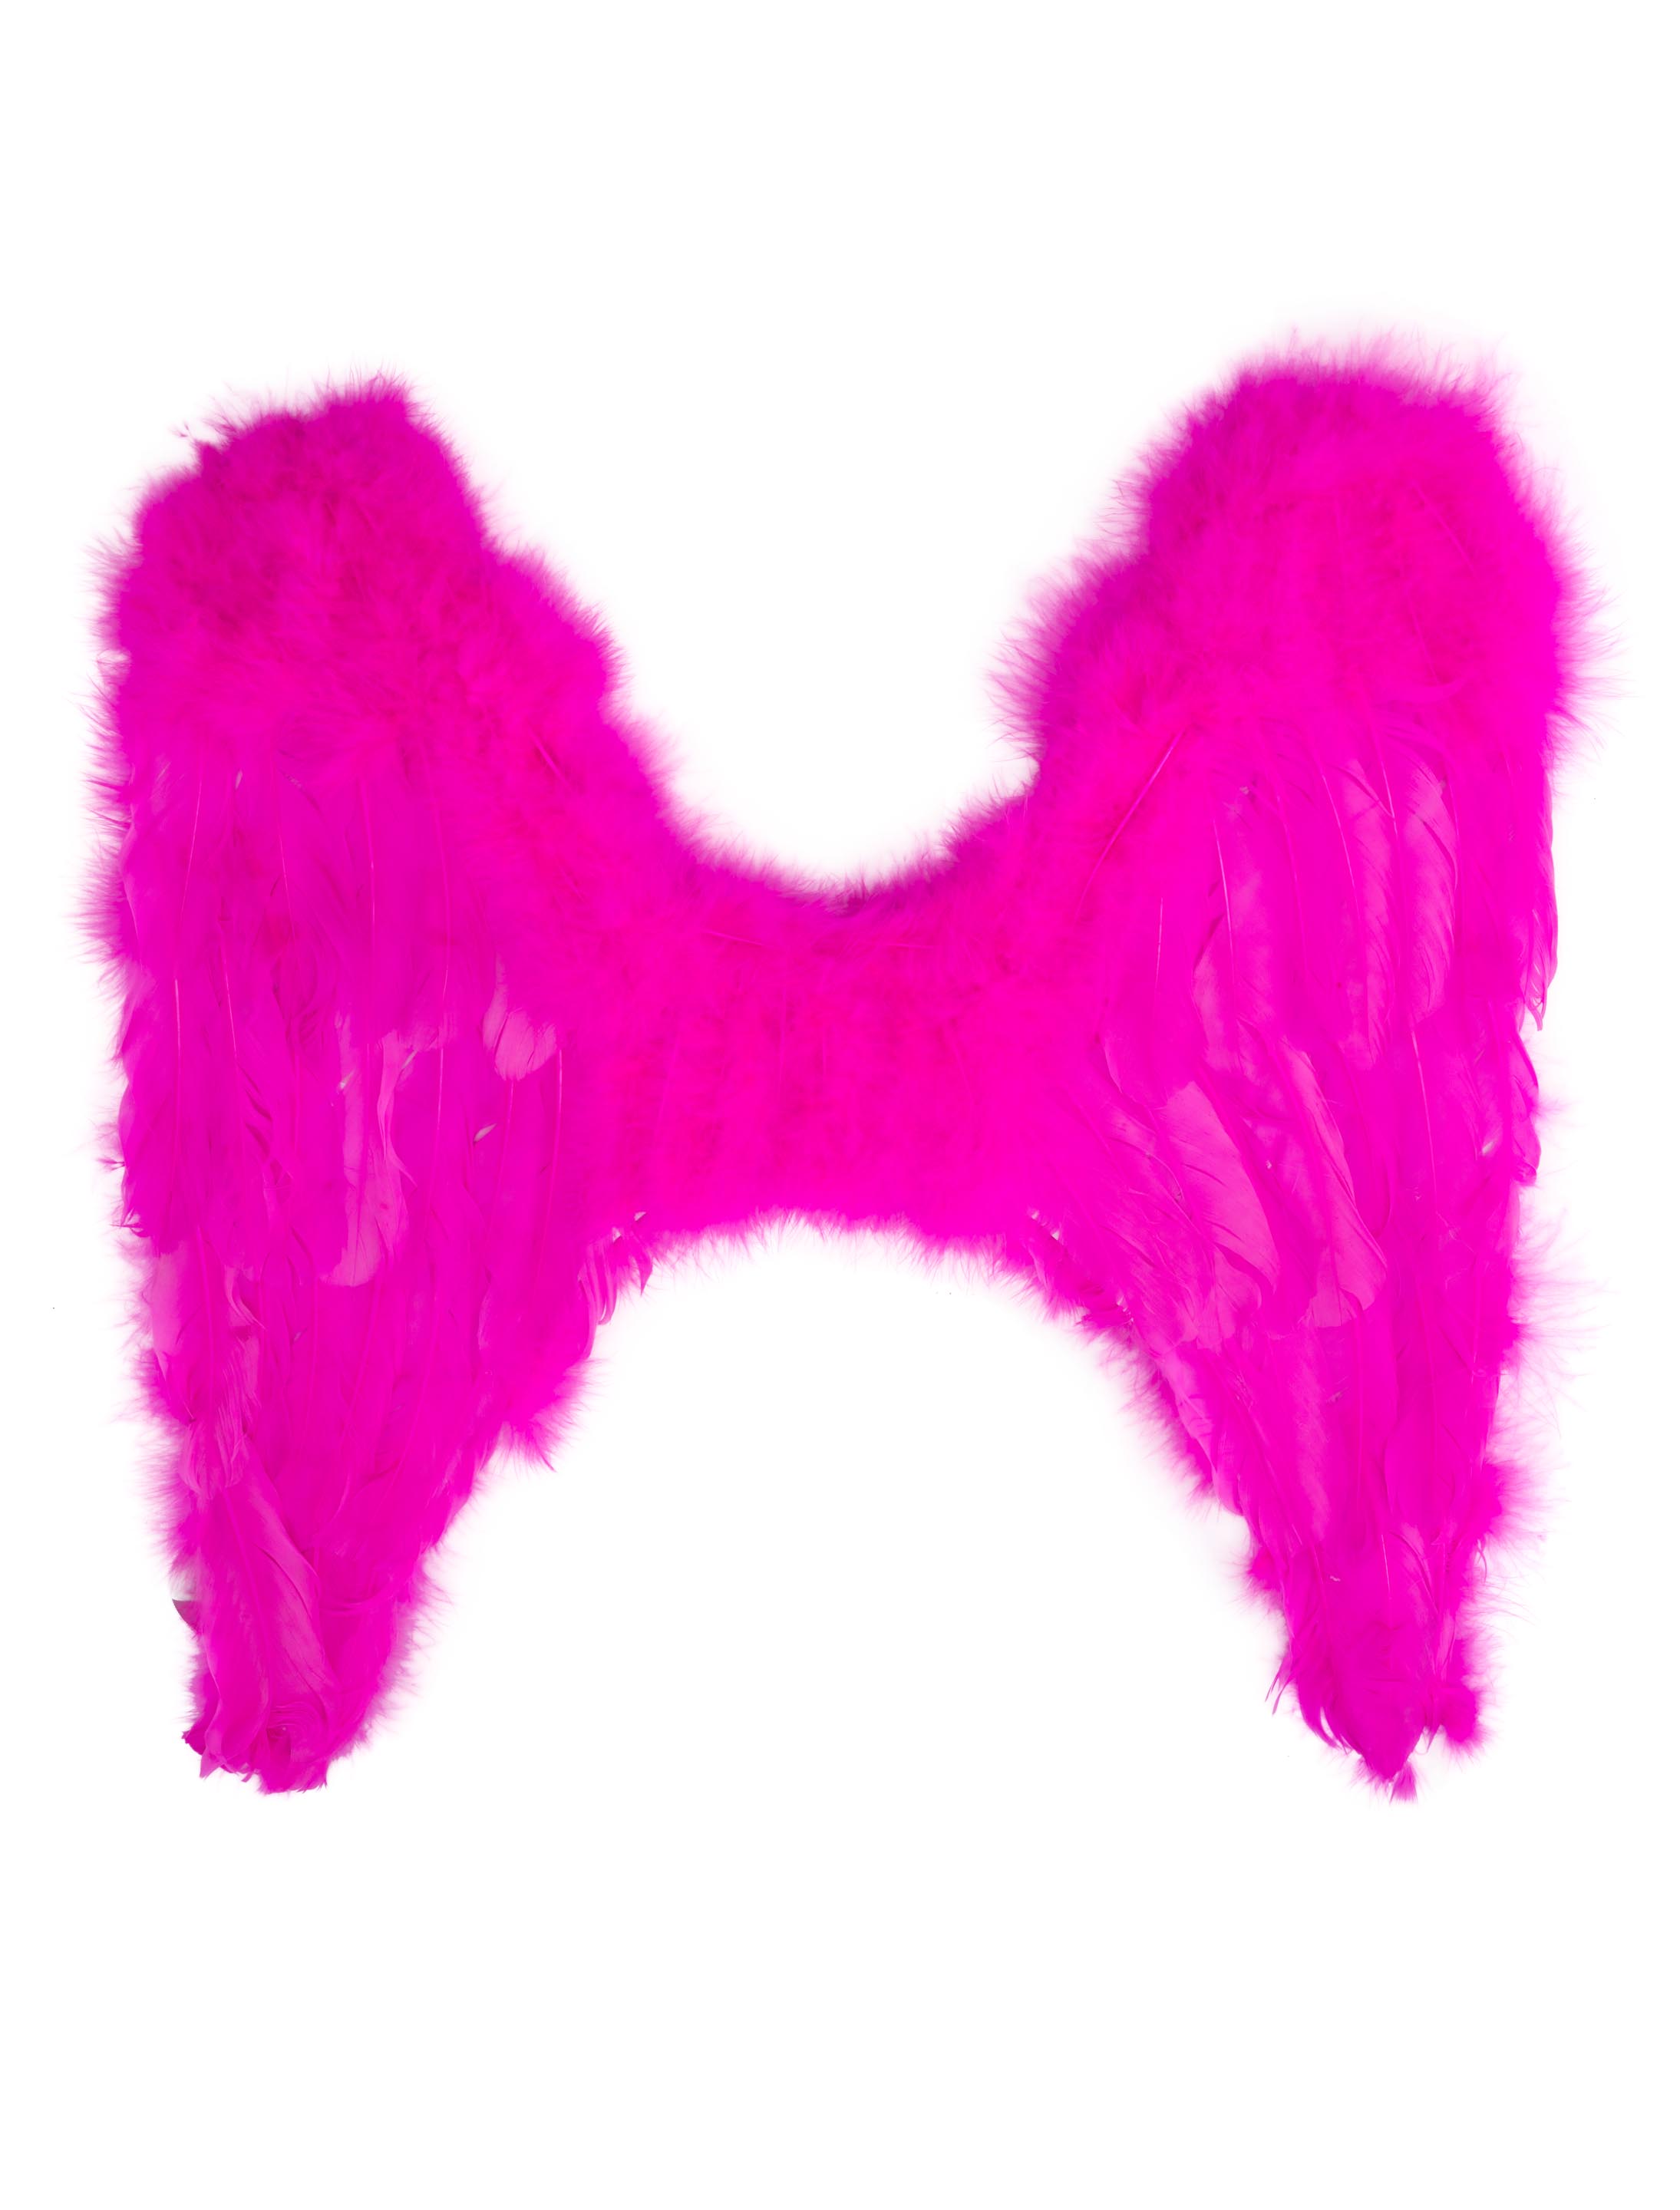 Engelsflügel pink klein 40 x 40 cm